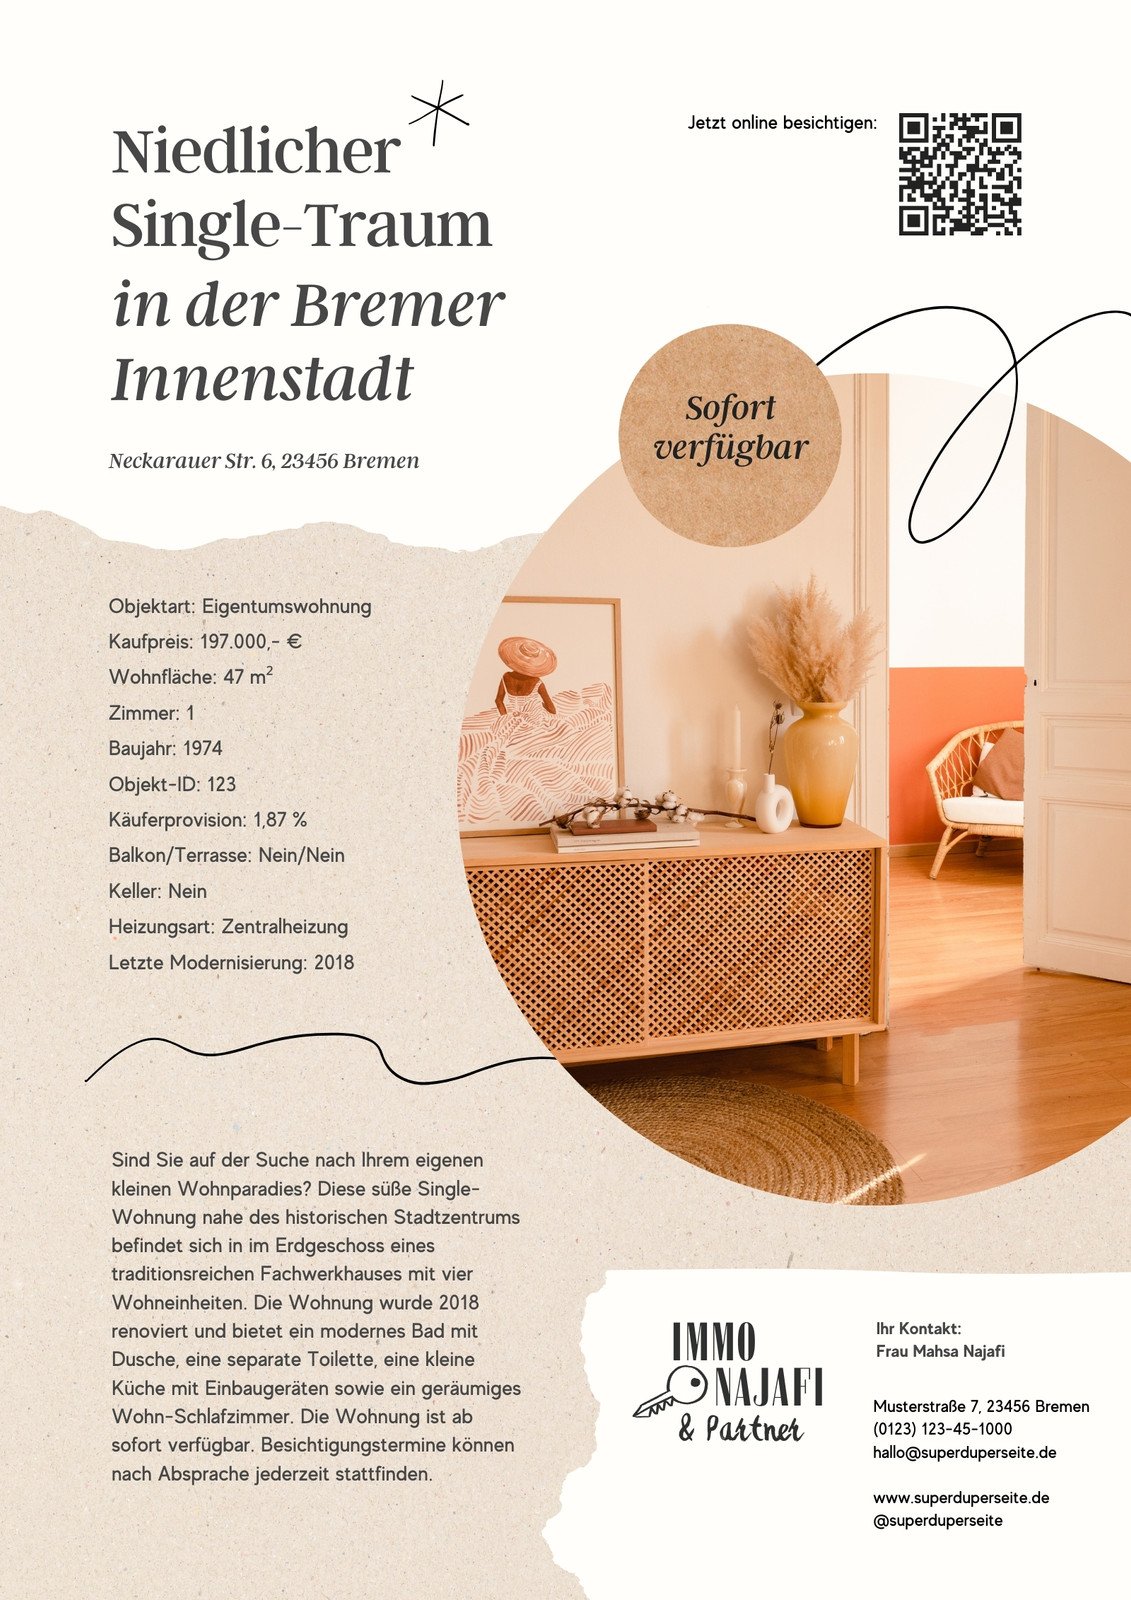 Immobilienexposé-Flyer in Grunge-Stil in Beige Orange Weiß